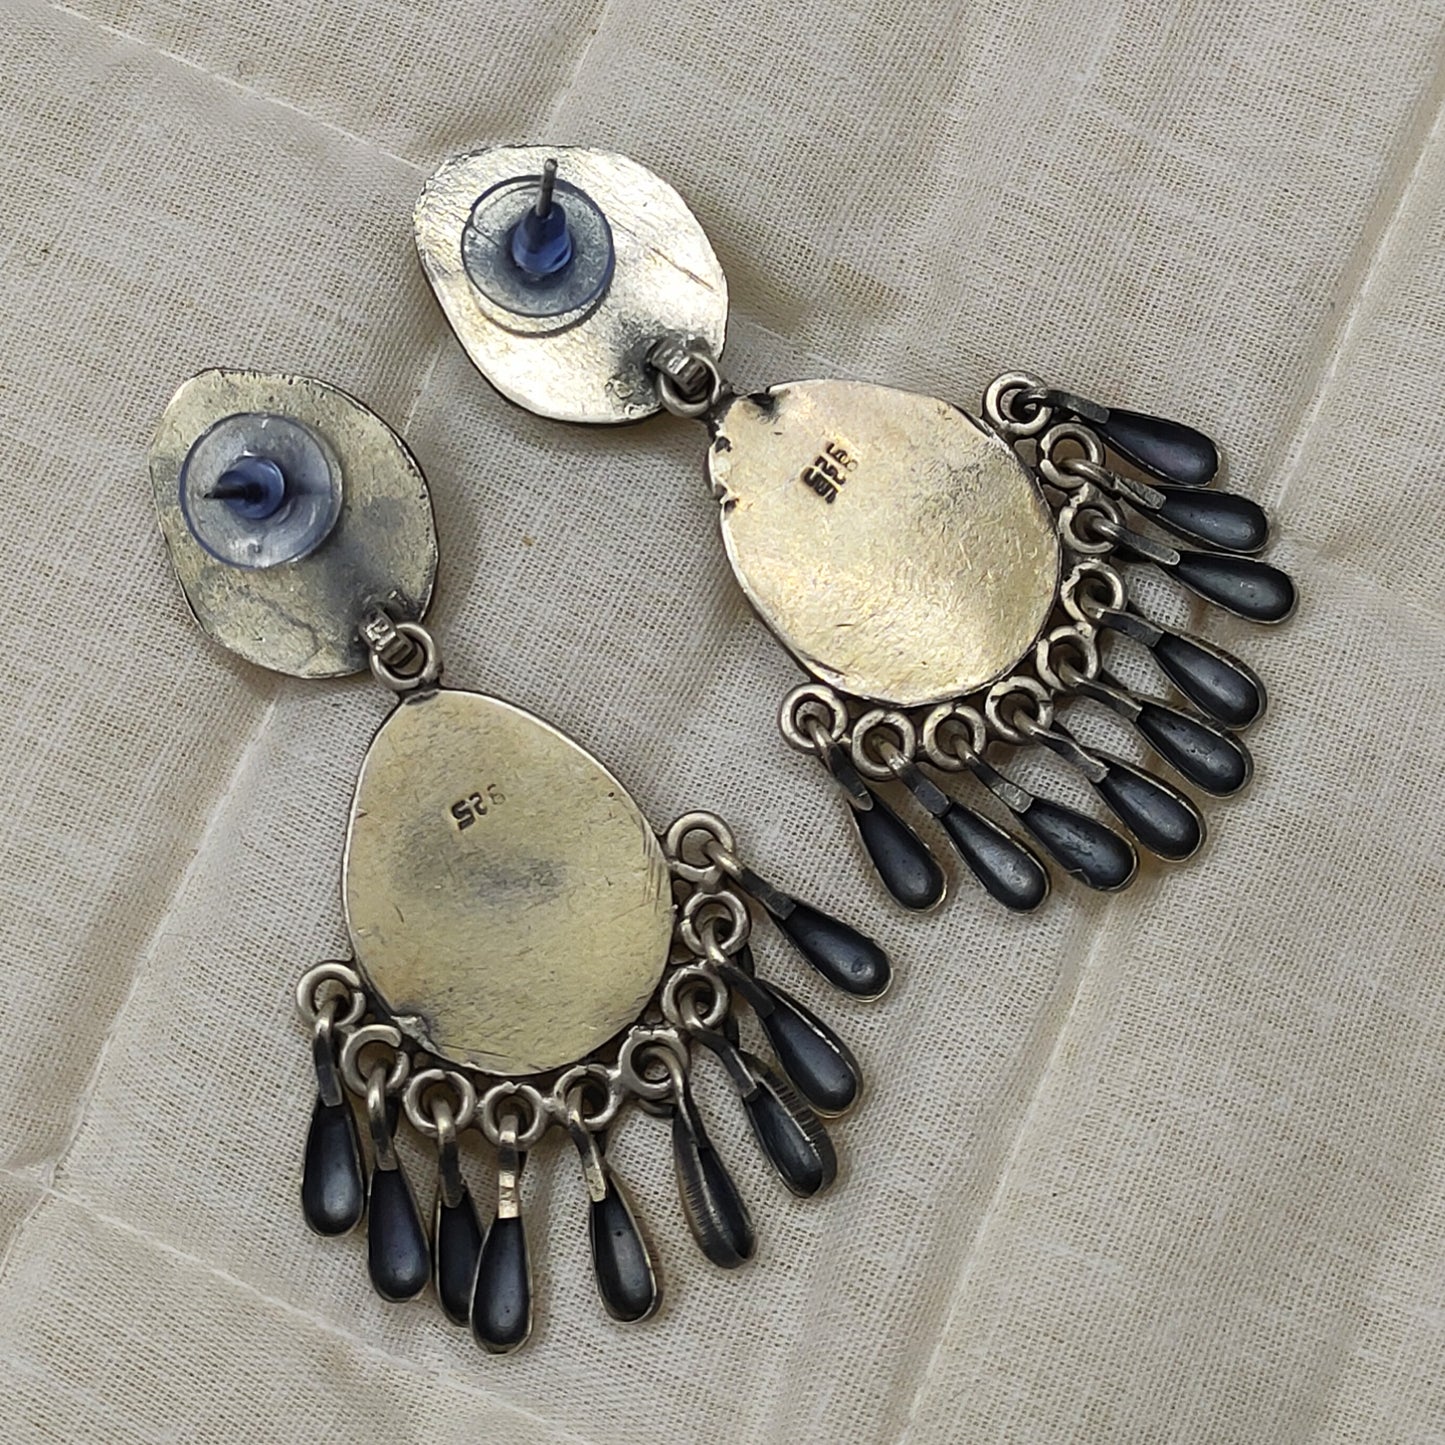 Beautifully Ornamented Tribal Silver Jhumka Earrings